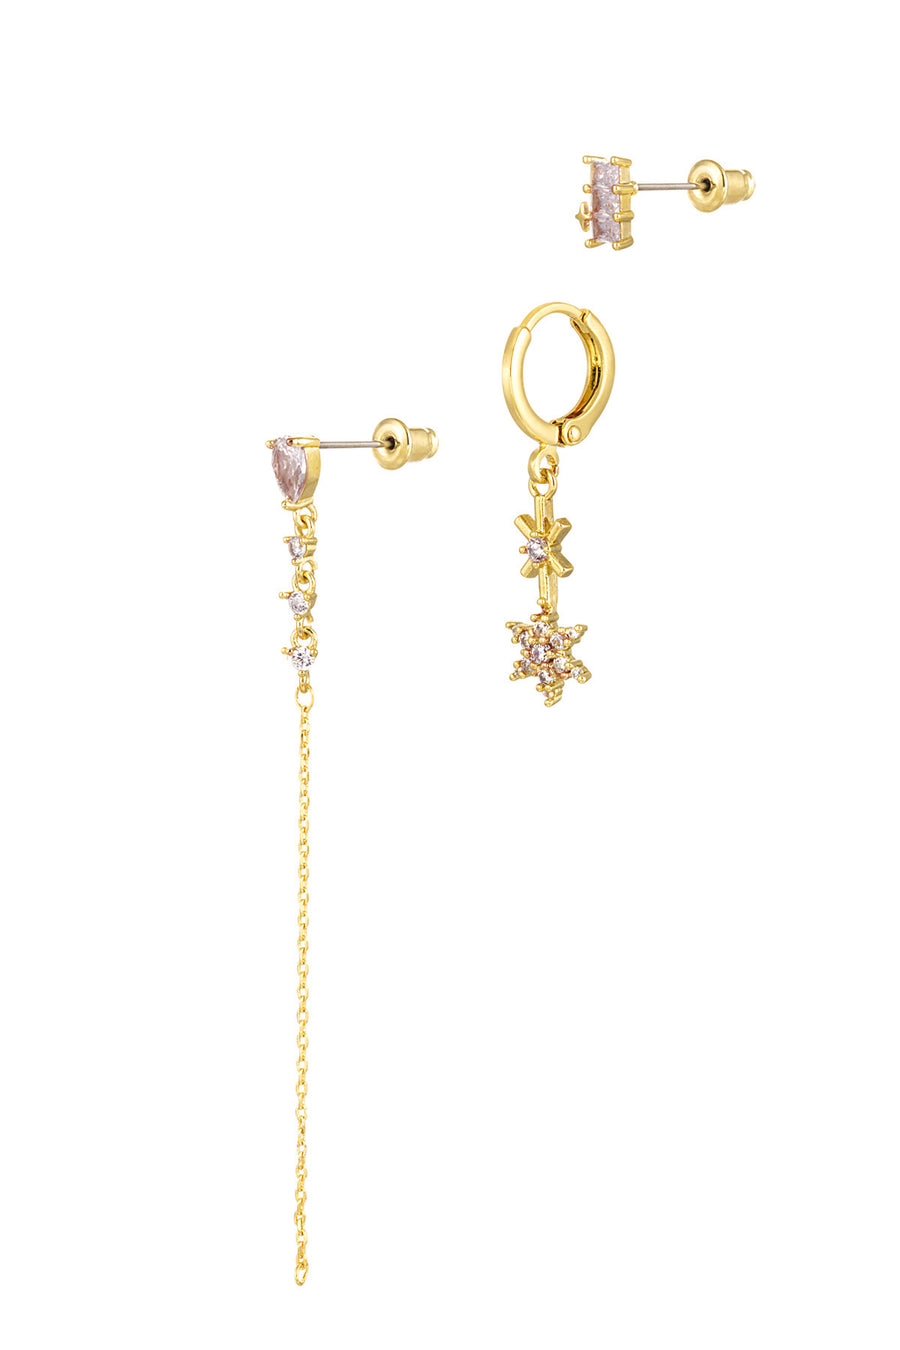 Rebecca Earrings Bundle -3 pairs of earrings